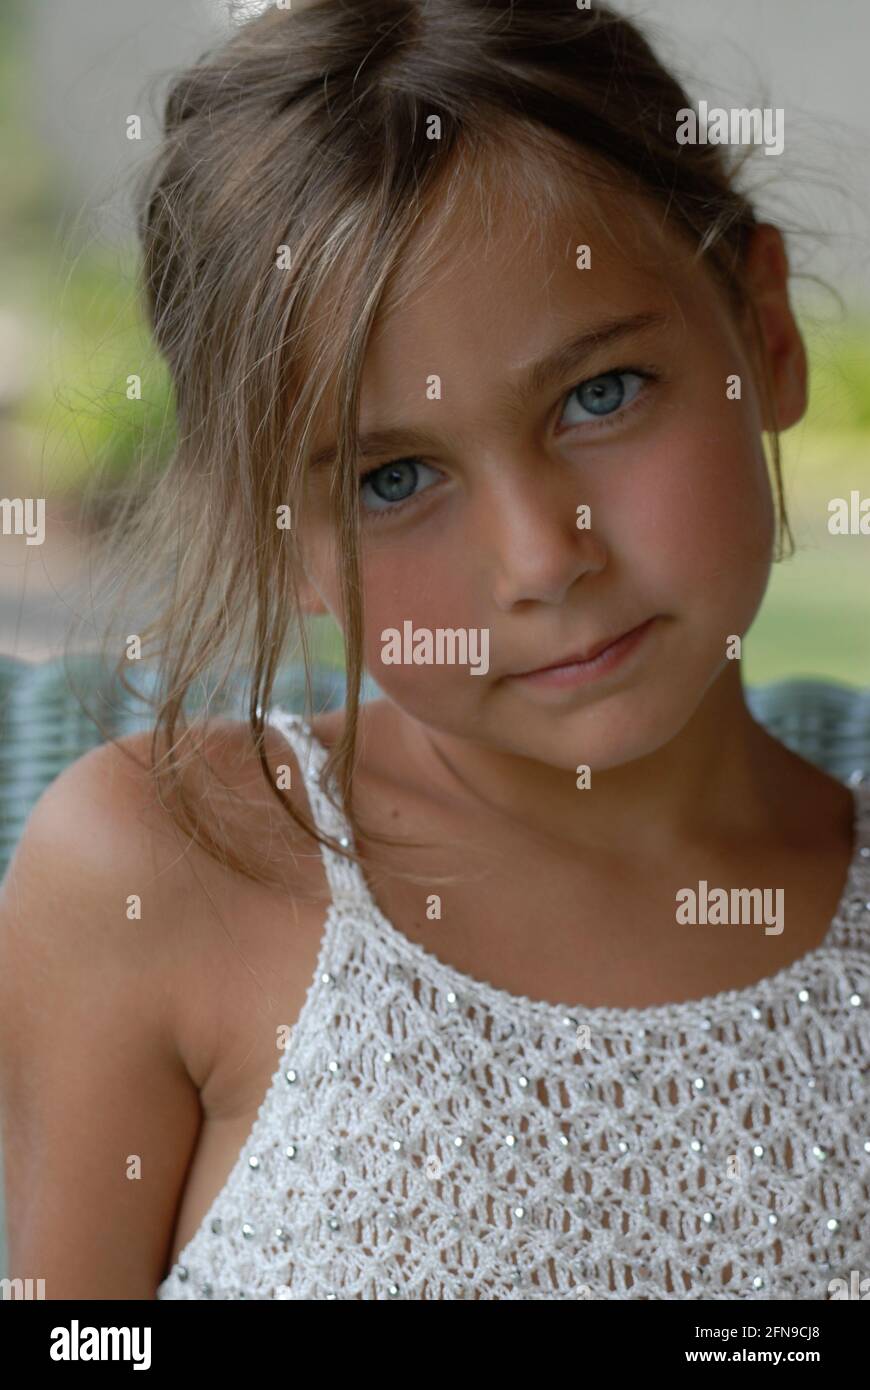 Kleines Mädchen blonde Haare, blaue Augen und weißes Kleid, das macht  Grimassen, italienische kleine Mädchen, Italien Stockfotografie - Alamy